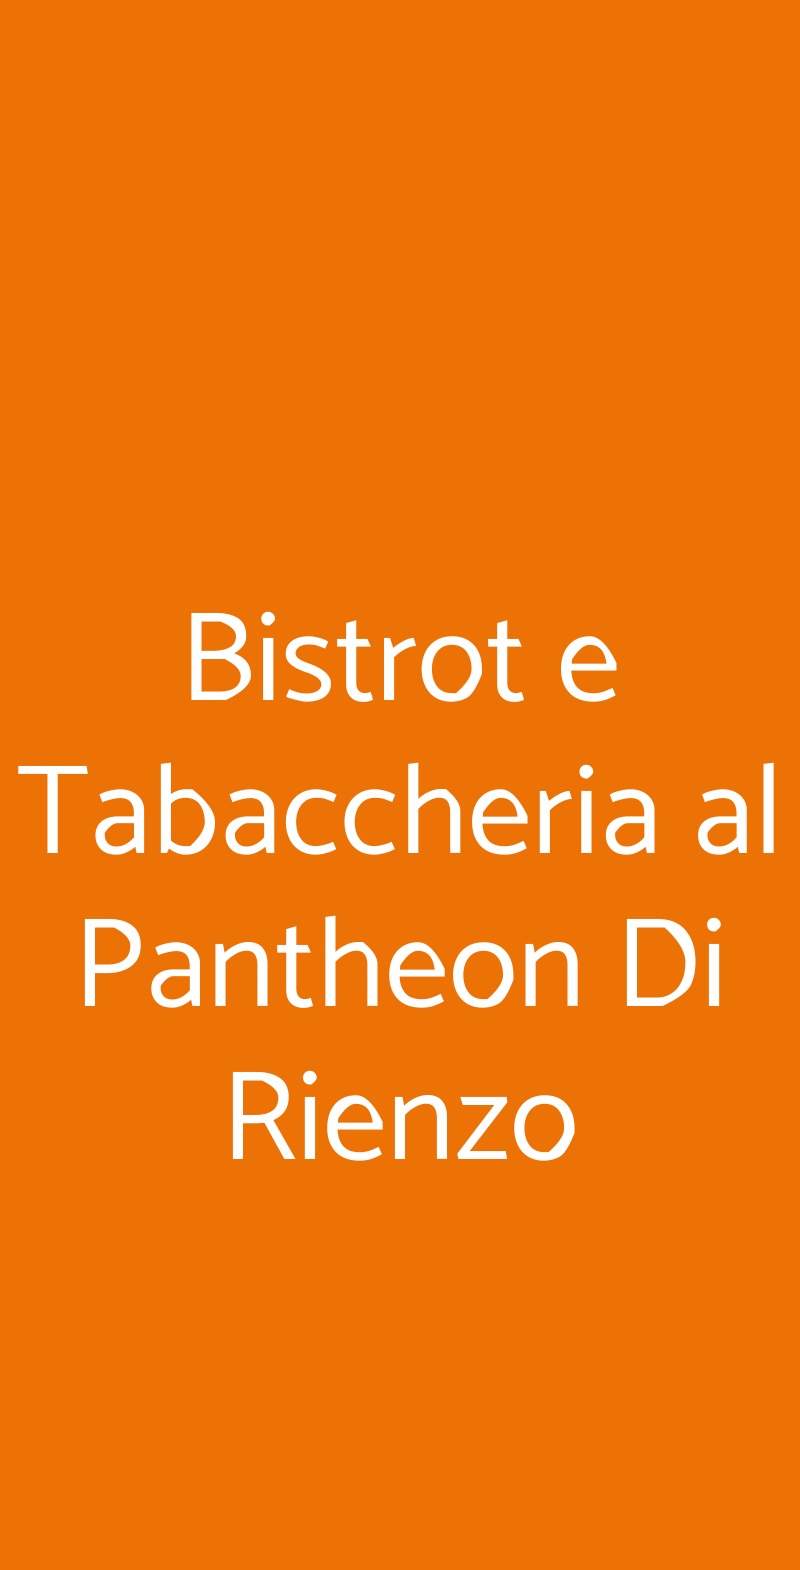 Bistrot e Tabaccheria al Pantheon Di Rienzo Roma menù 1 pagina